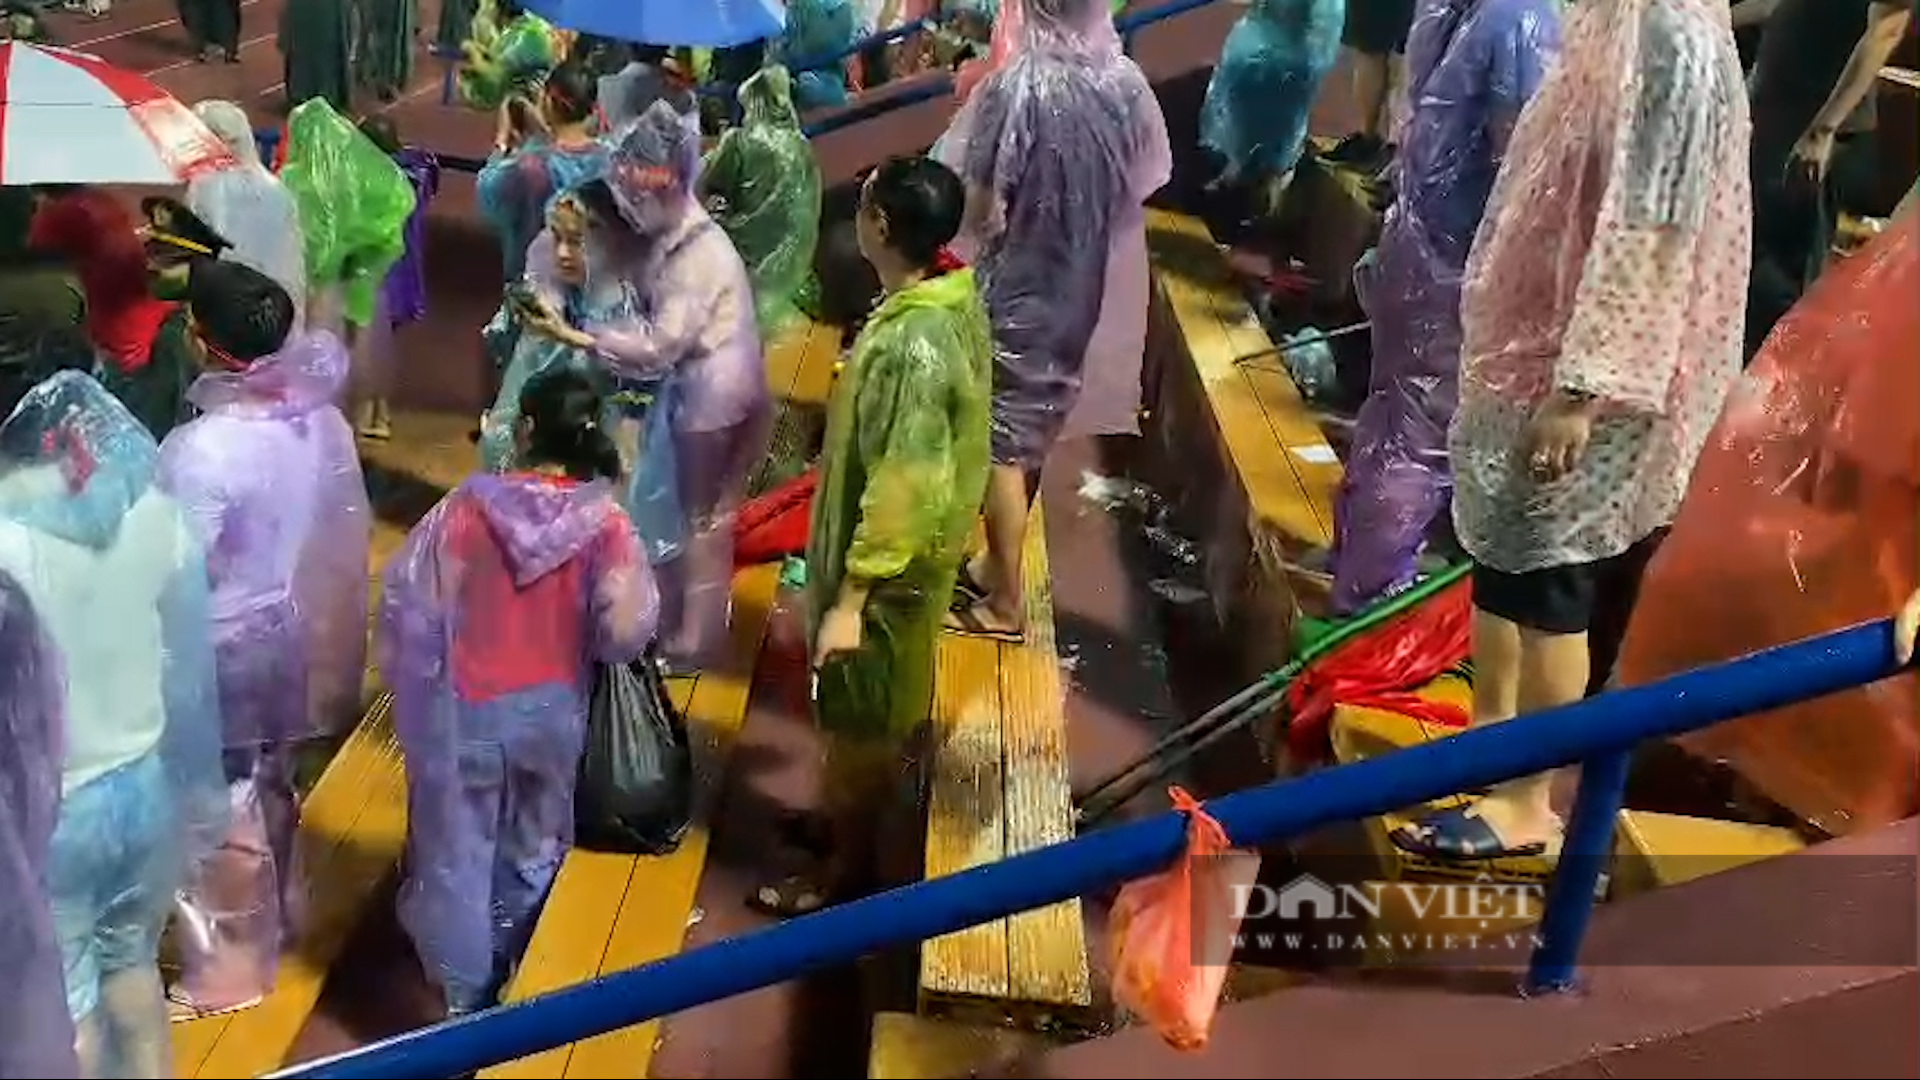 CĐV Việt Nam đội mưa nán lại thu dọn rác sau trận thắng Myanmar - Ảnh 4.